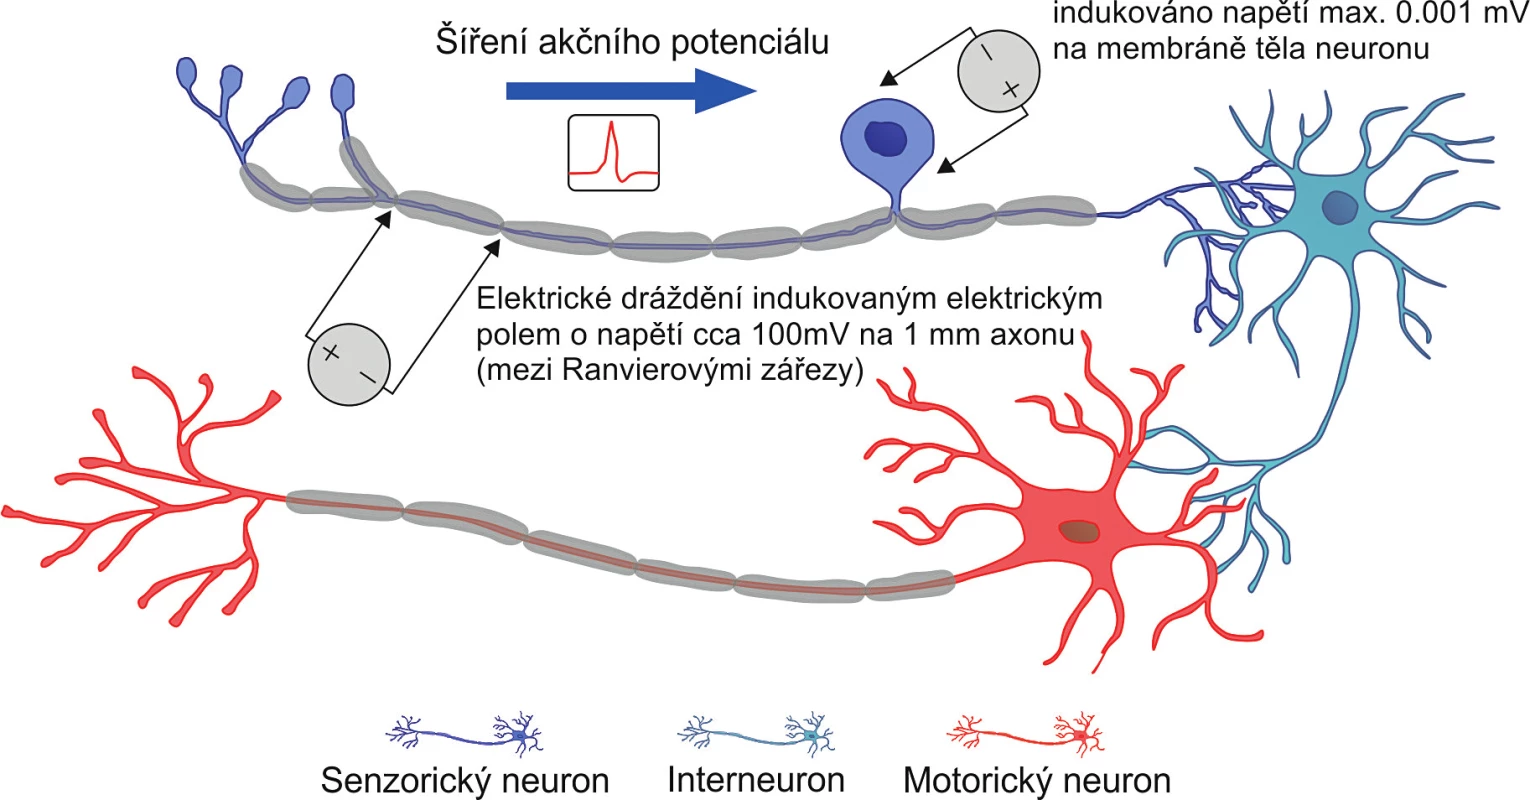 Stimulace aferentní nervové dráhy senzorického neuronu s důsledkem vzniku reflexního oblouku a motorického účinku vysokoindukční magnetické stimulace. Proudové impulzy vytvářené touto fyzikální intervencí mají již natolik velkou hustotu indukovaného elektrického proudu, že mezi Ranvierovými zářezy zajistí dostatečný potenciálový spád, který generuje akční potenciál šířící se po axonu senzorického neuronu a dále vytvořeným reflexním obloukem. Na těle nervové buňky je však stále tak malý napěťový spád, že se není nutno obávat elektrického poškození membrány těla samotné nervové buňky.